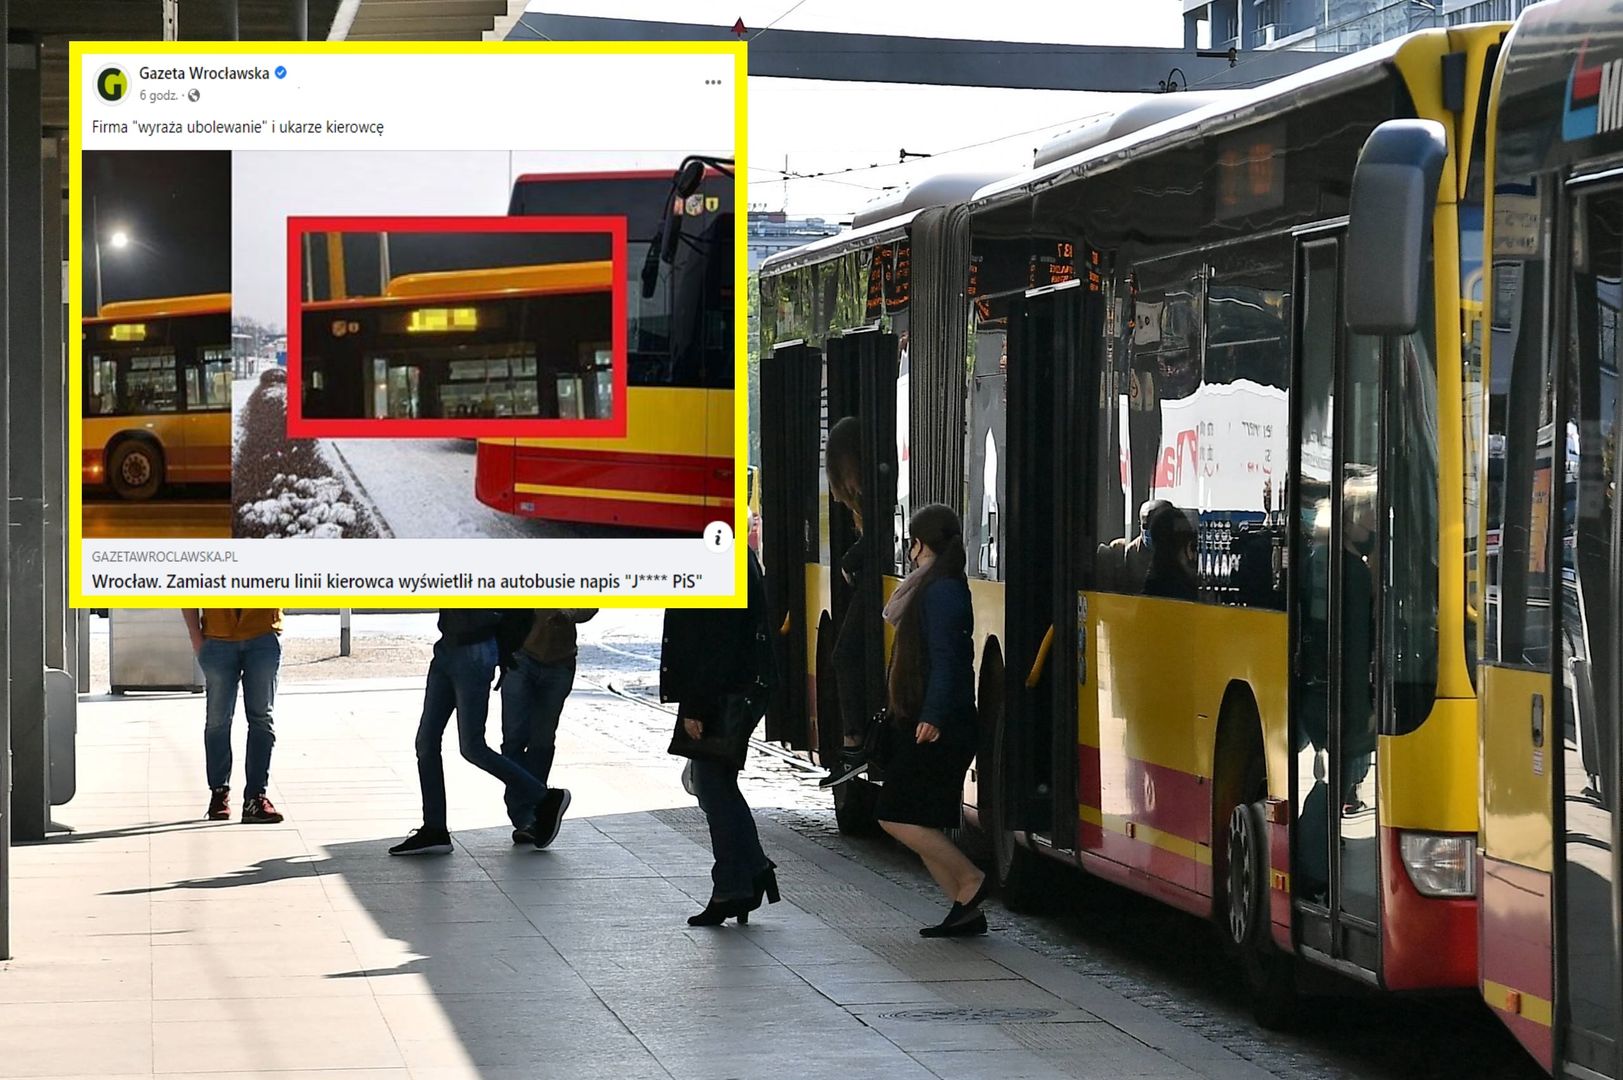 Wrocław. "***** PiS" na autobusowej tablicy. Kierowca poniesie konsekwencje